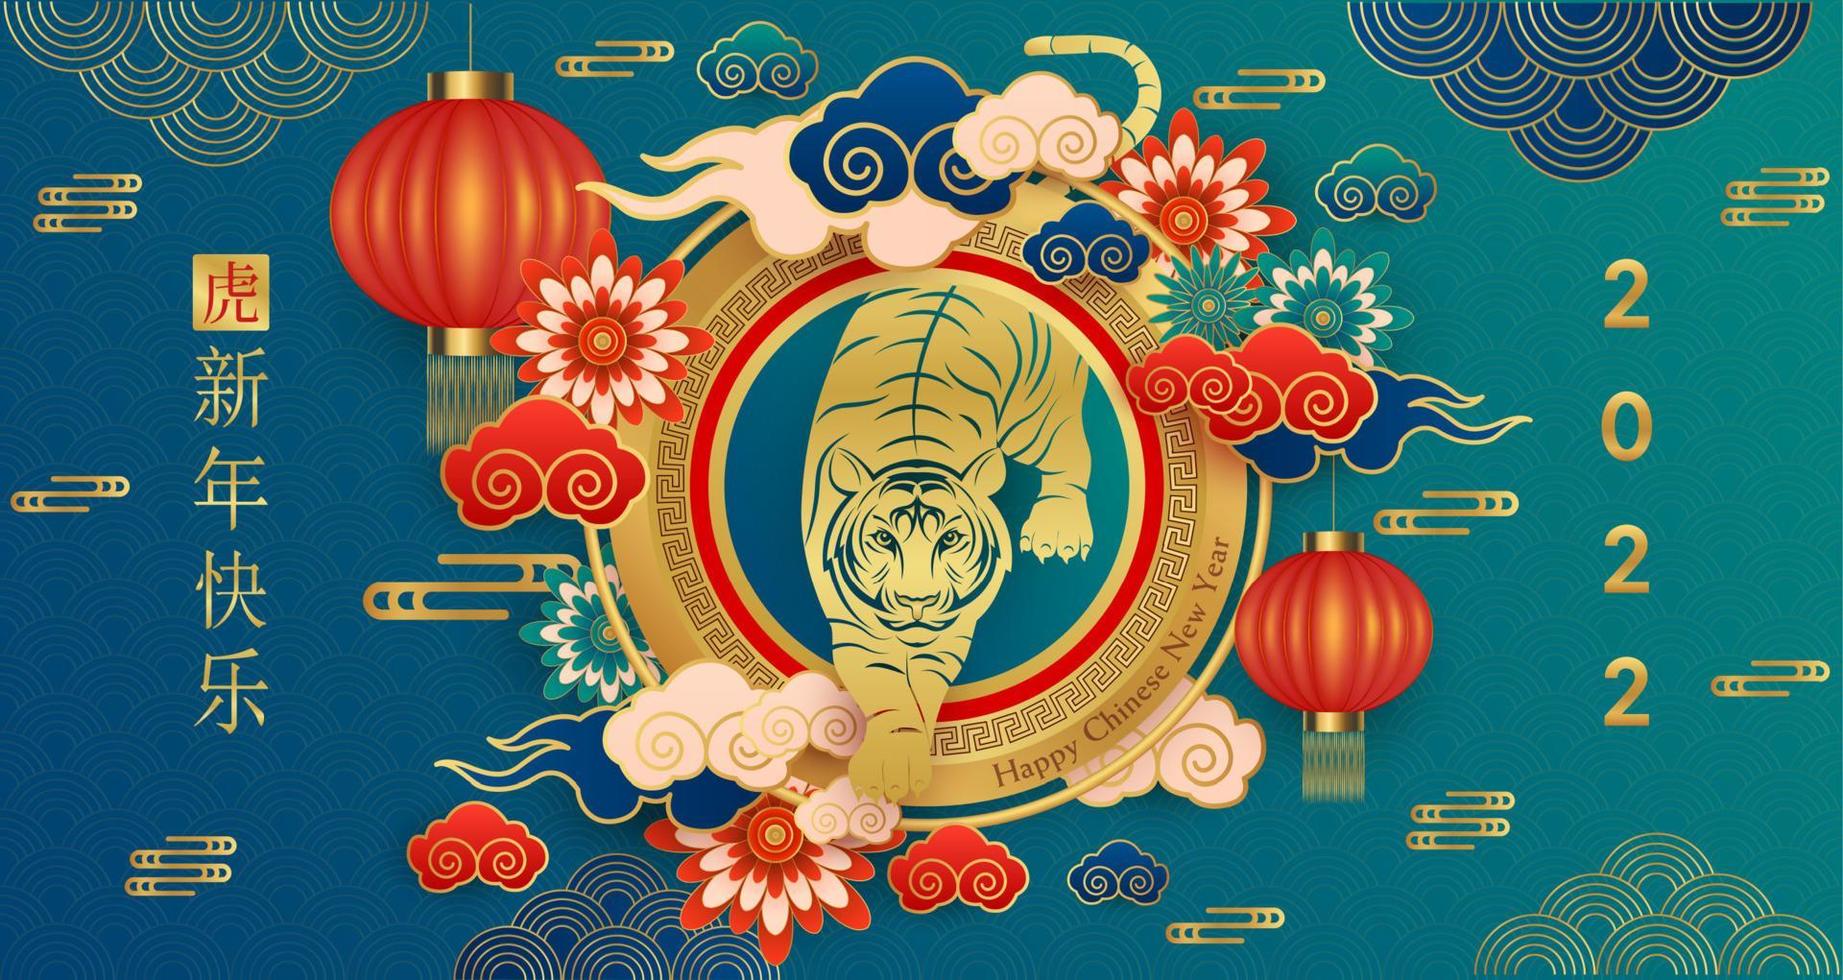 gelukkig chinees nieuwjaar 2022, tijger sterrenbeeld op blauwe kleur achtergrond. Aziatische elementen met ambachtelijke tijgerpapier gesneden stijl. chinese vertaling gelukkig nieuwjaar 2022, jaar van de tijger vector eps10.